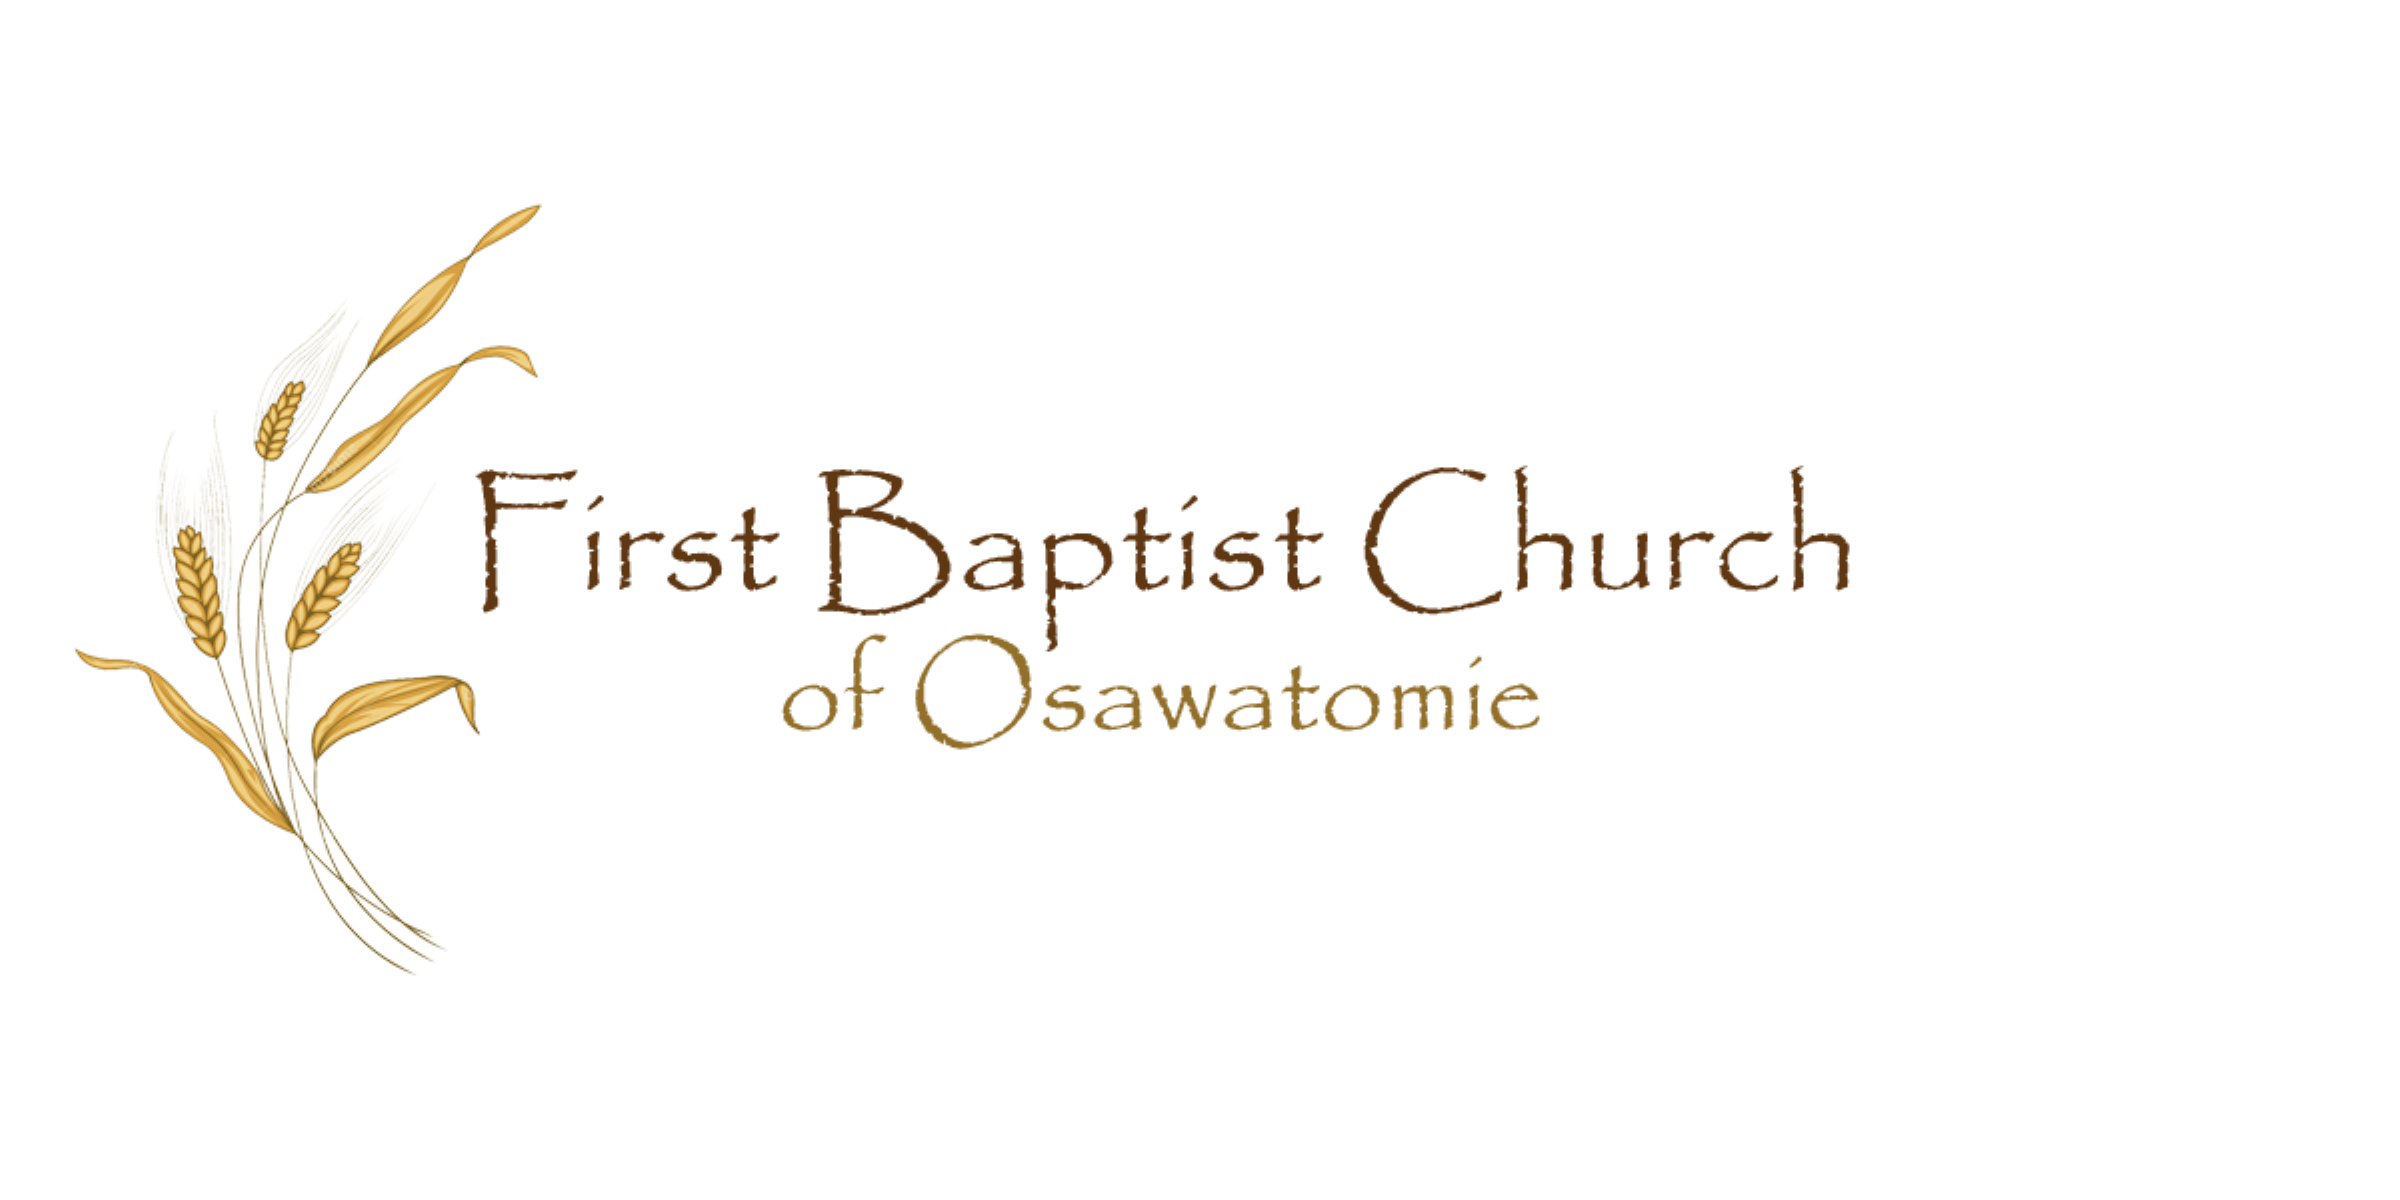 First Baptist Church of Osawatomie